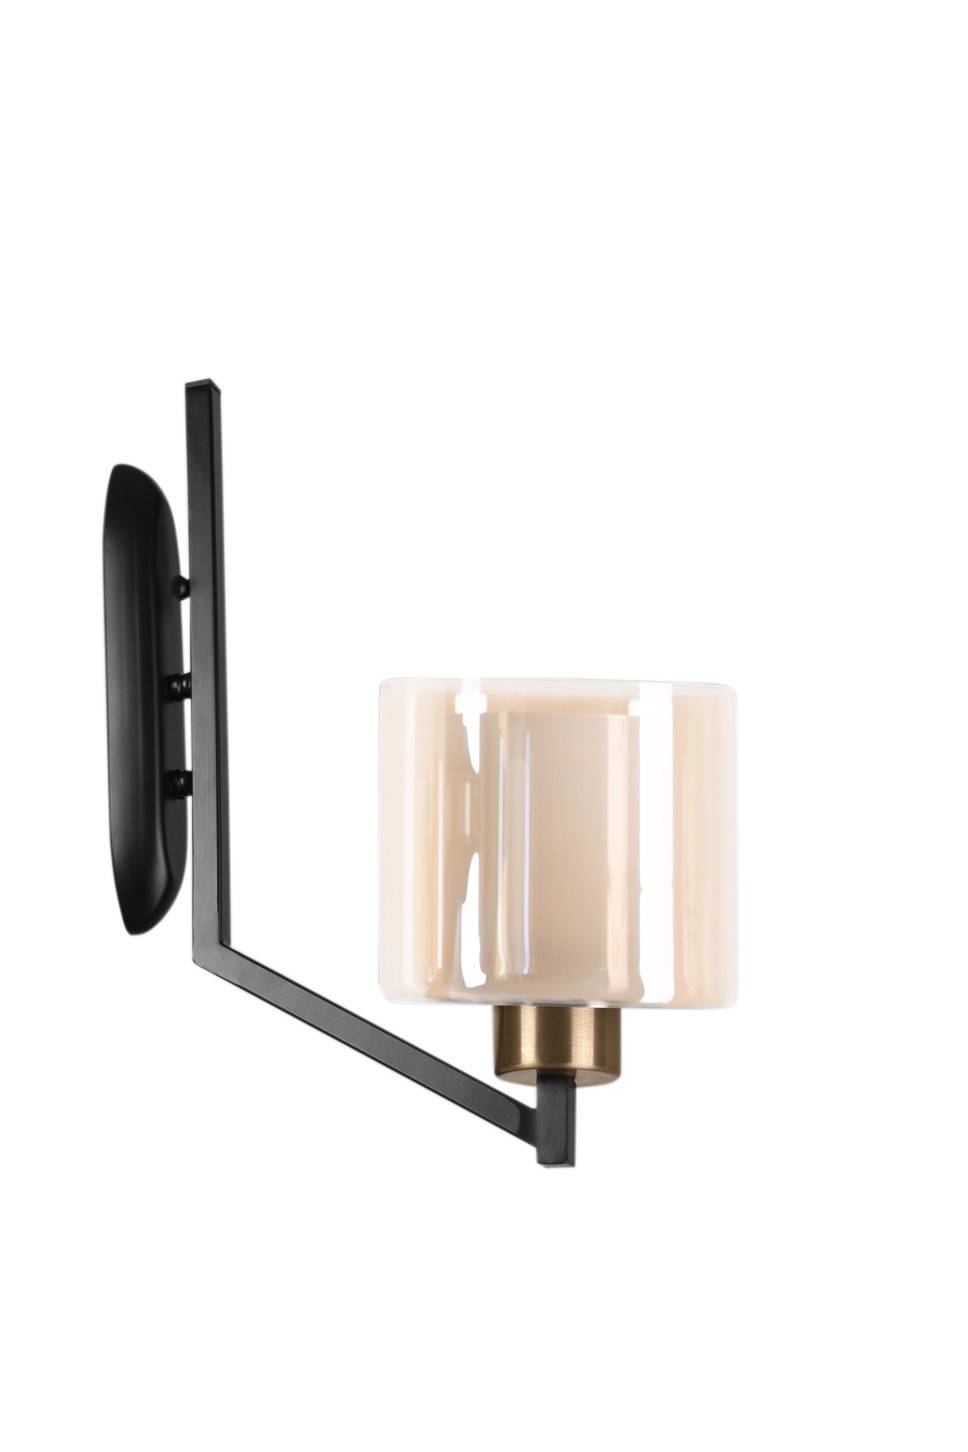 Asinus omgekeerde cilinder wandlamp 15 x 40 x 30 cm Metaal Zwart Koper